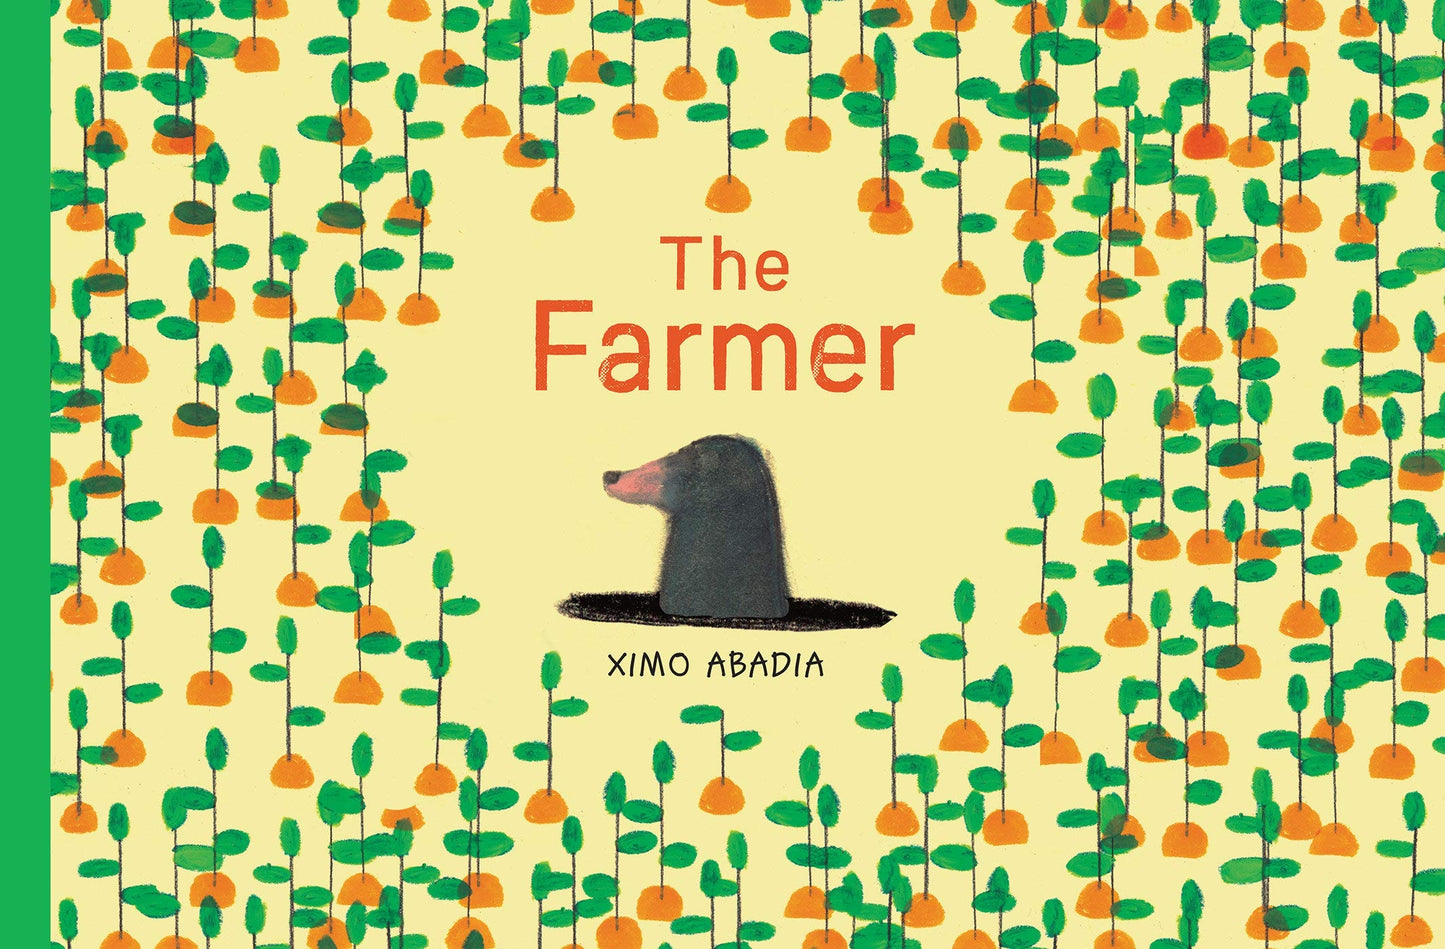 The Farmer by Ximo Abadia